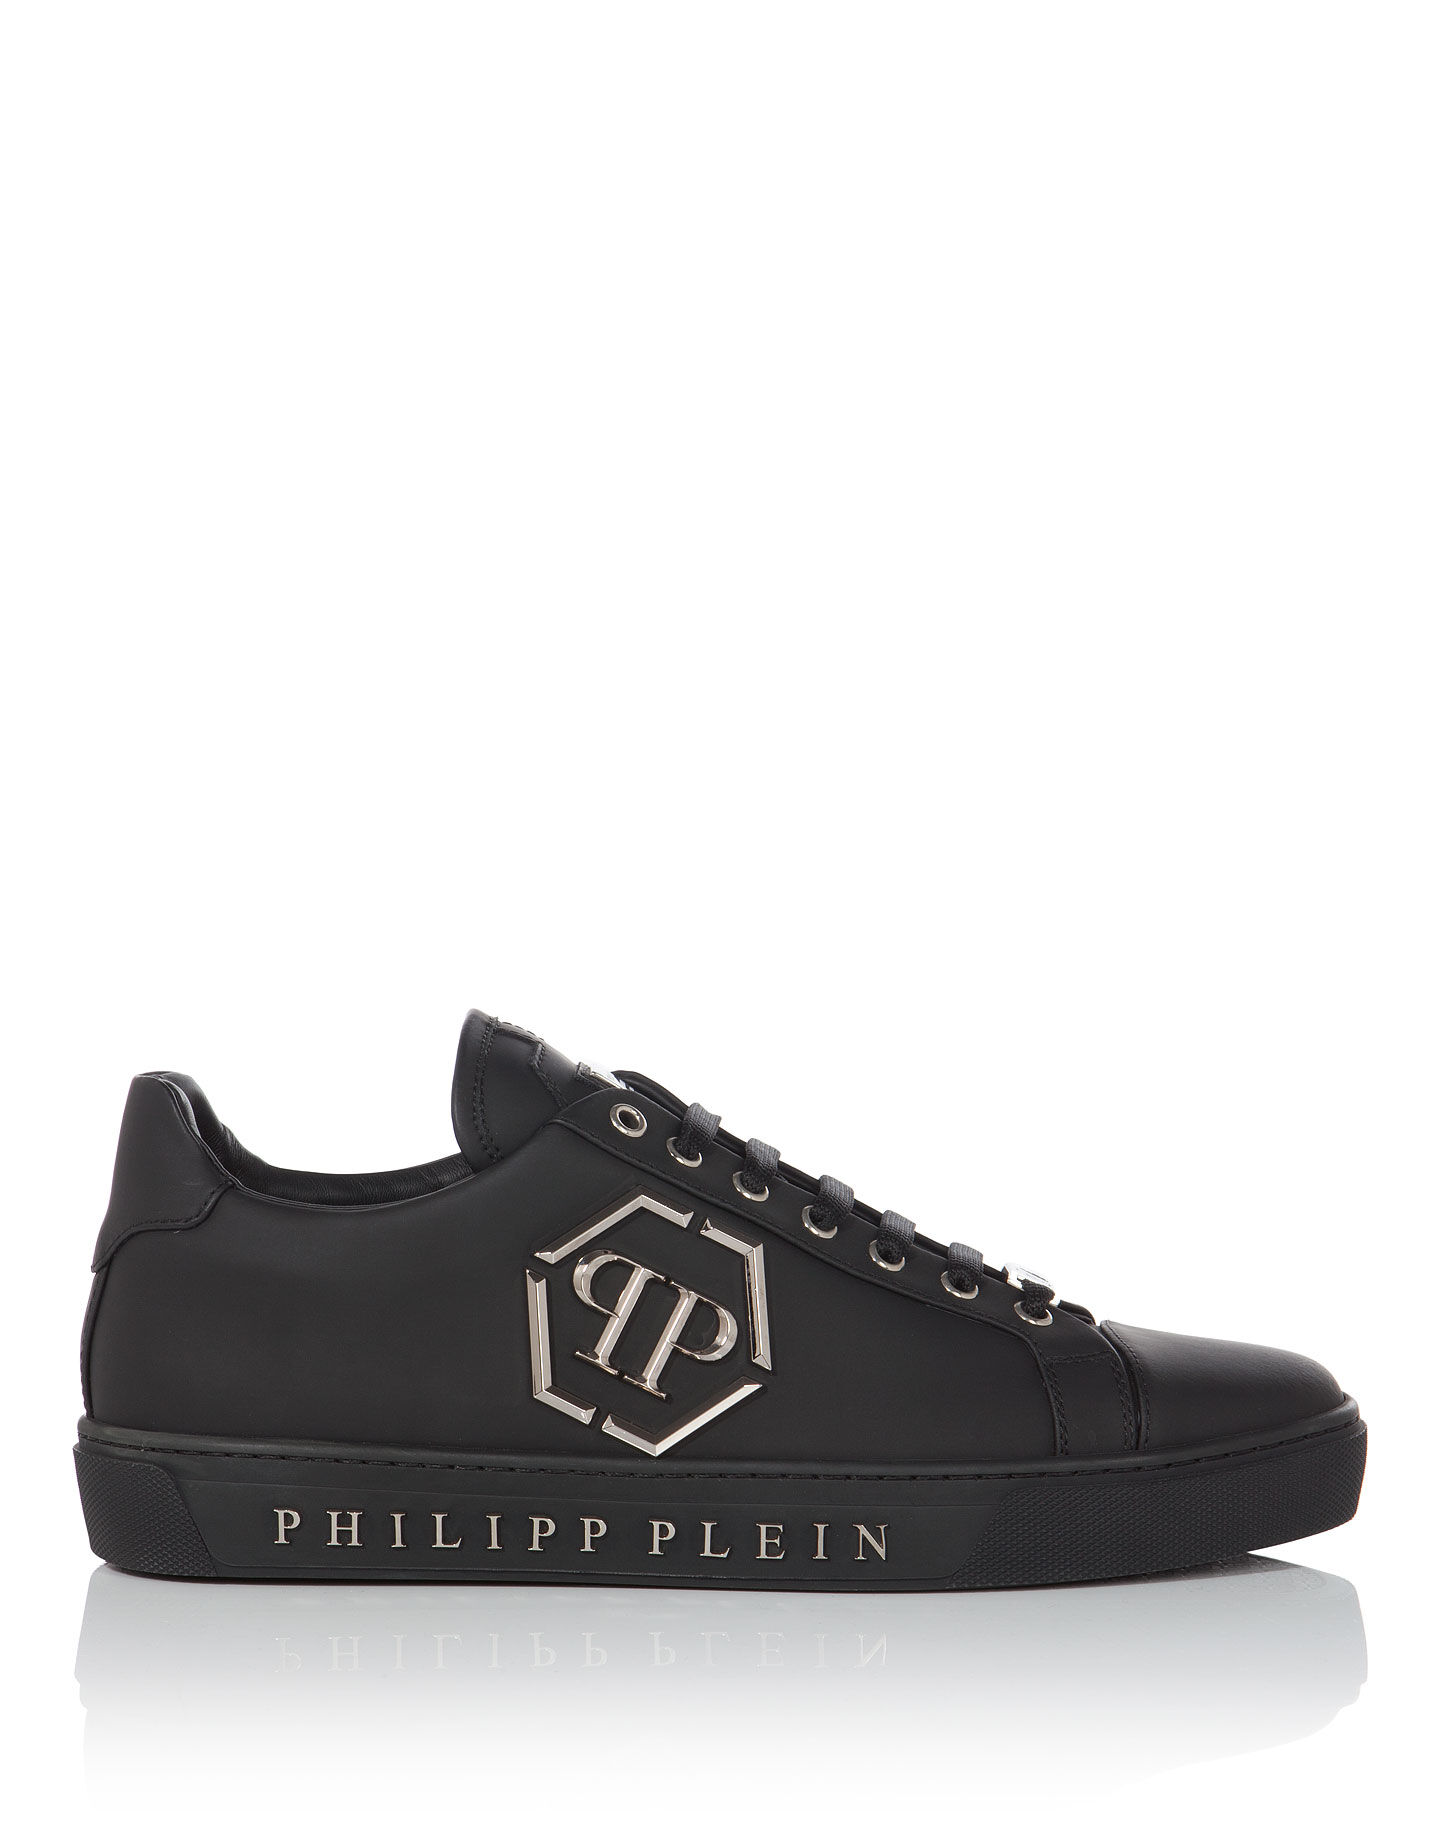 philipp plein fake shoes